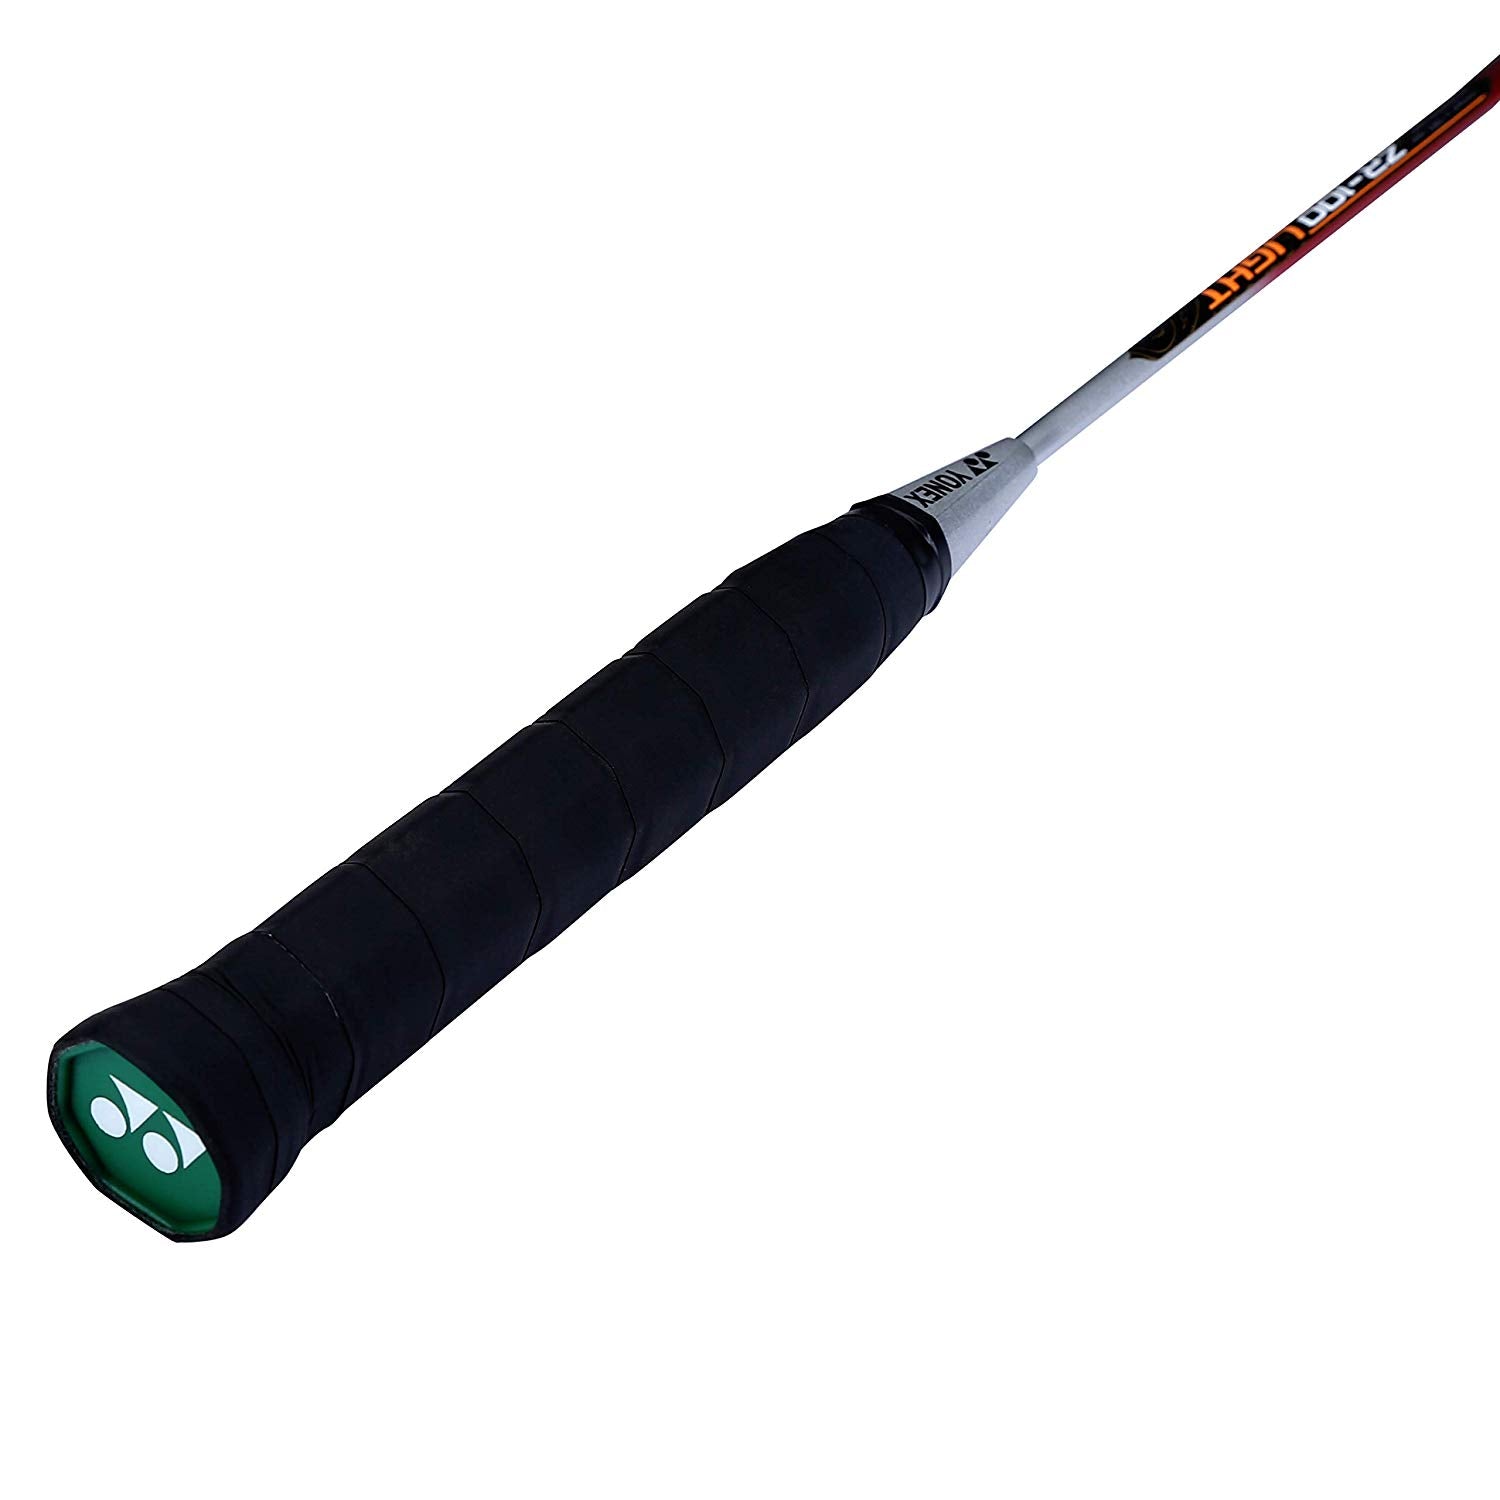 Yonex ZR 100 Light Aluminum Badminton Racquet Strung, Grip Size G4 (Red) - Best Price online Prokicksports.com